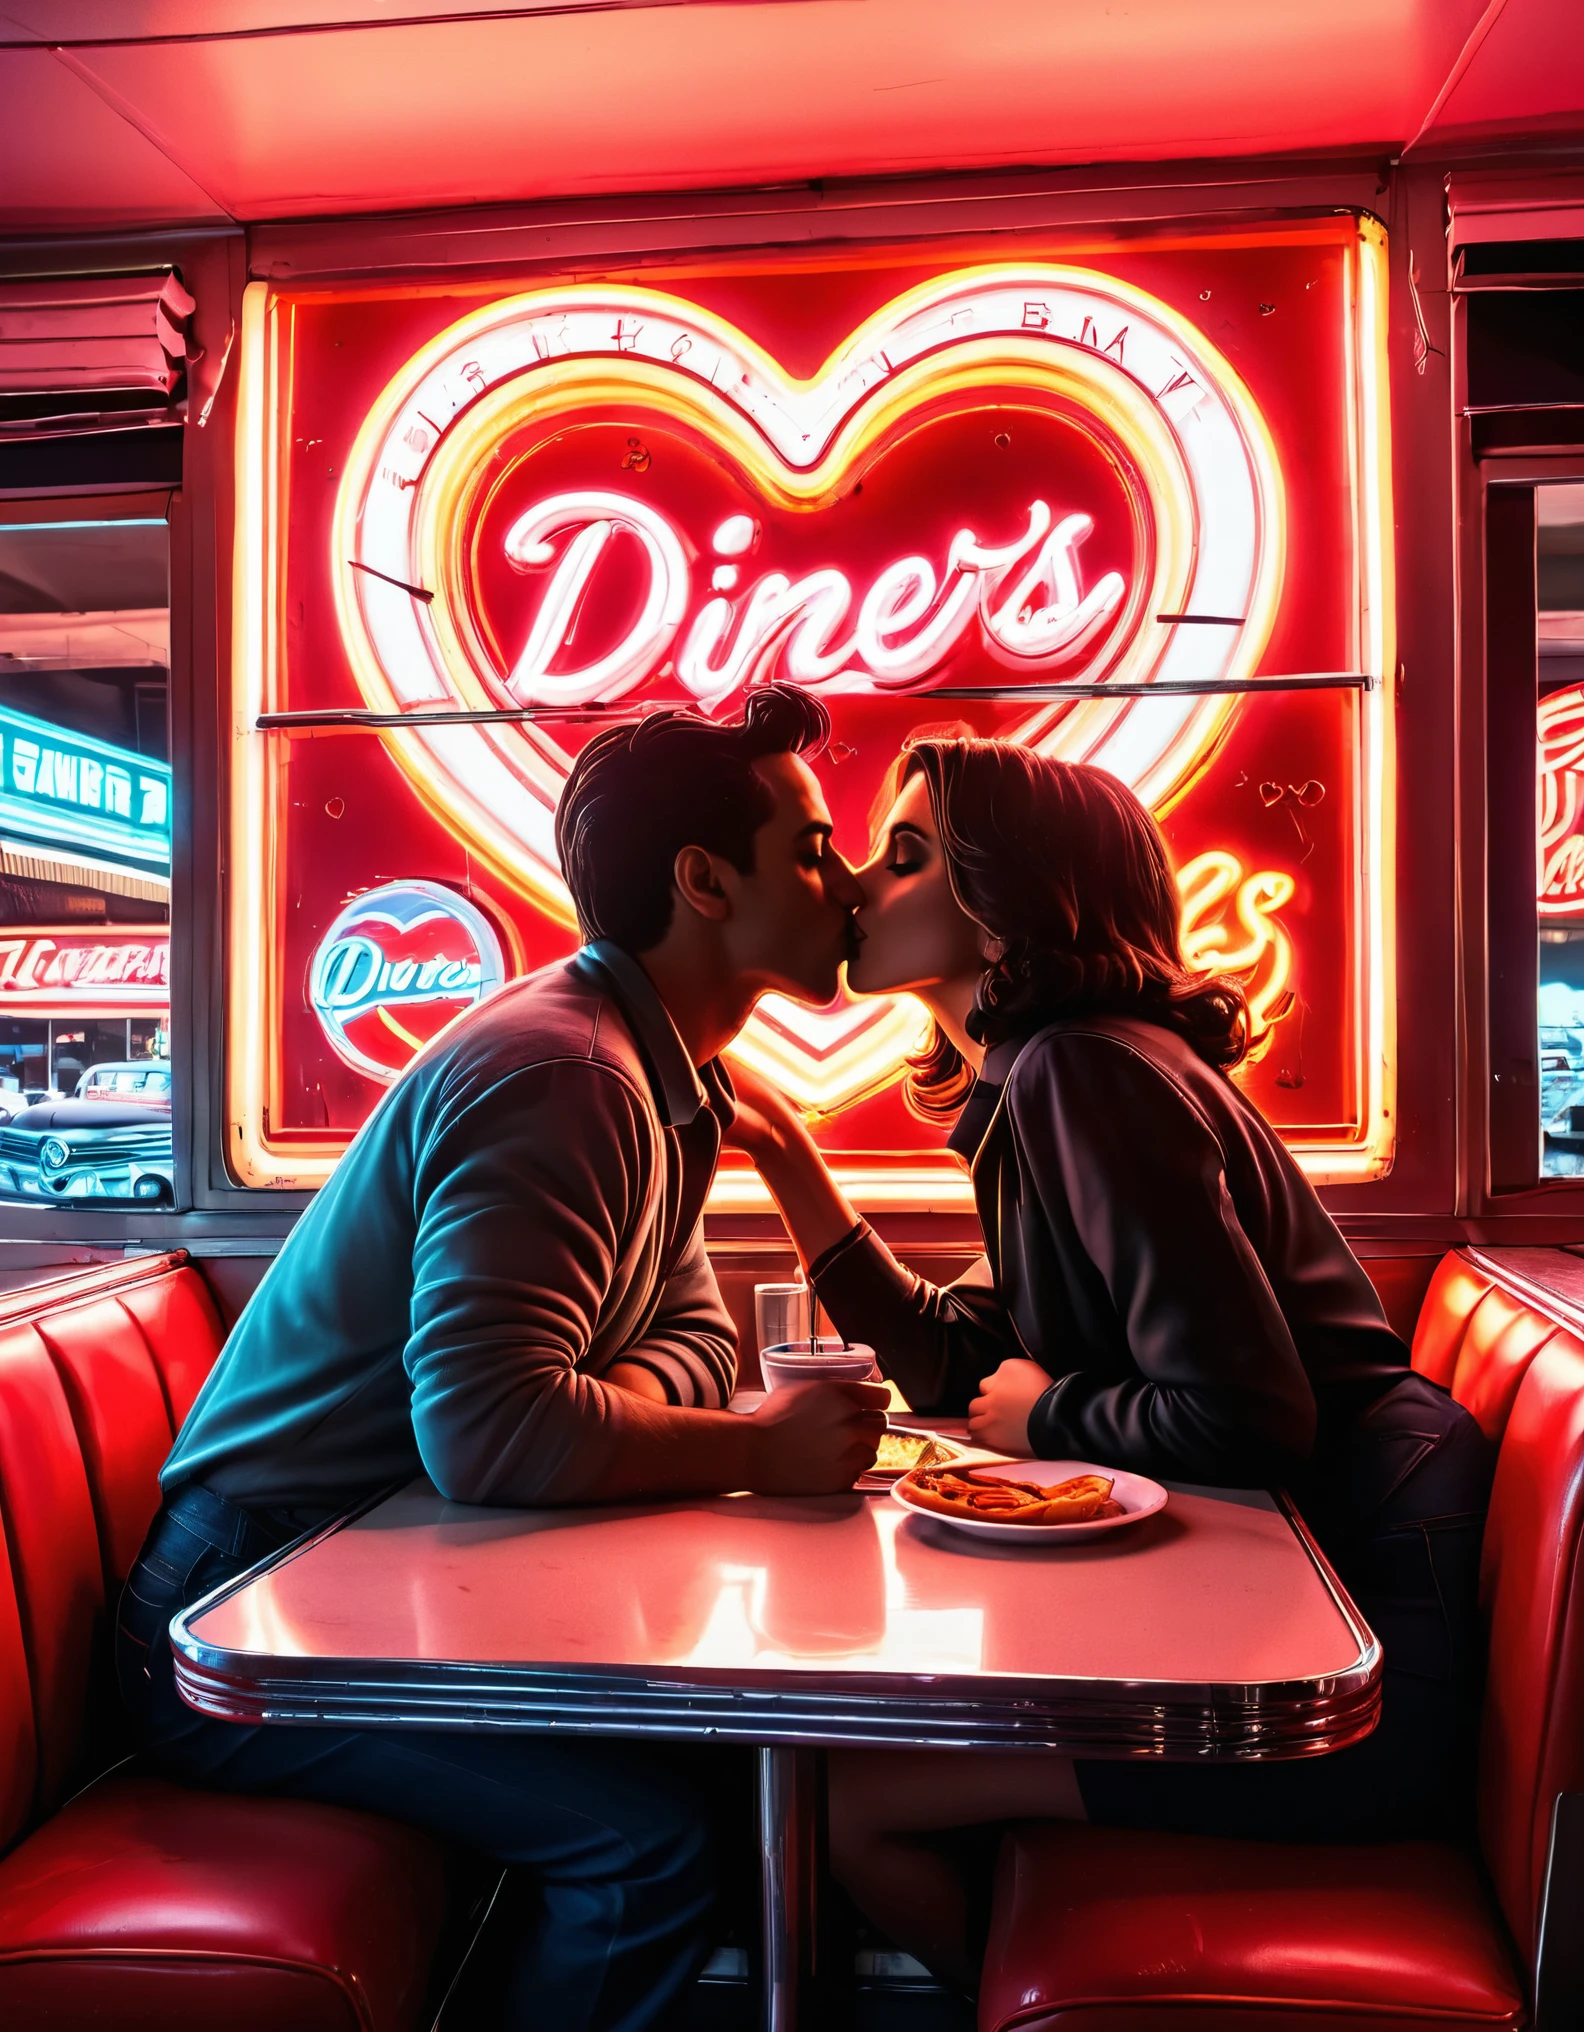 식당에서 키스하는 커플의 실루엣을 담은 레트로 네온 아트 작품, 네온사인과 하트 모양을 배경으로, 1950년대 향수를 불러일으키는 분위기